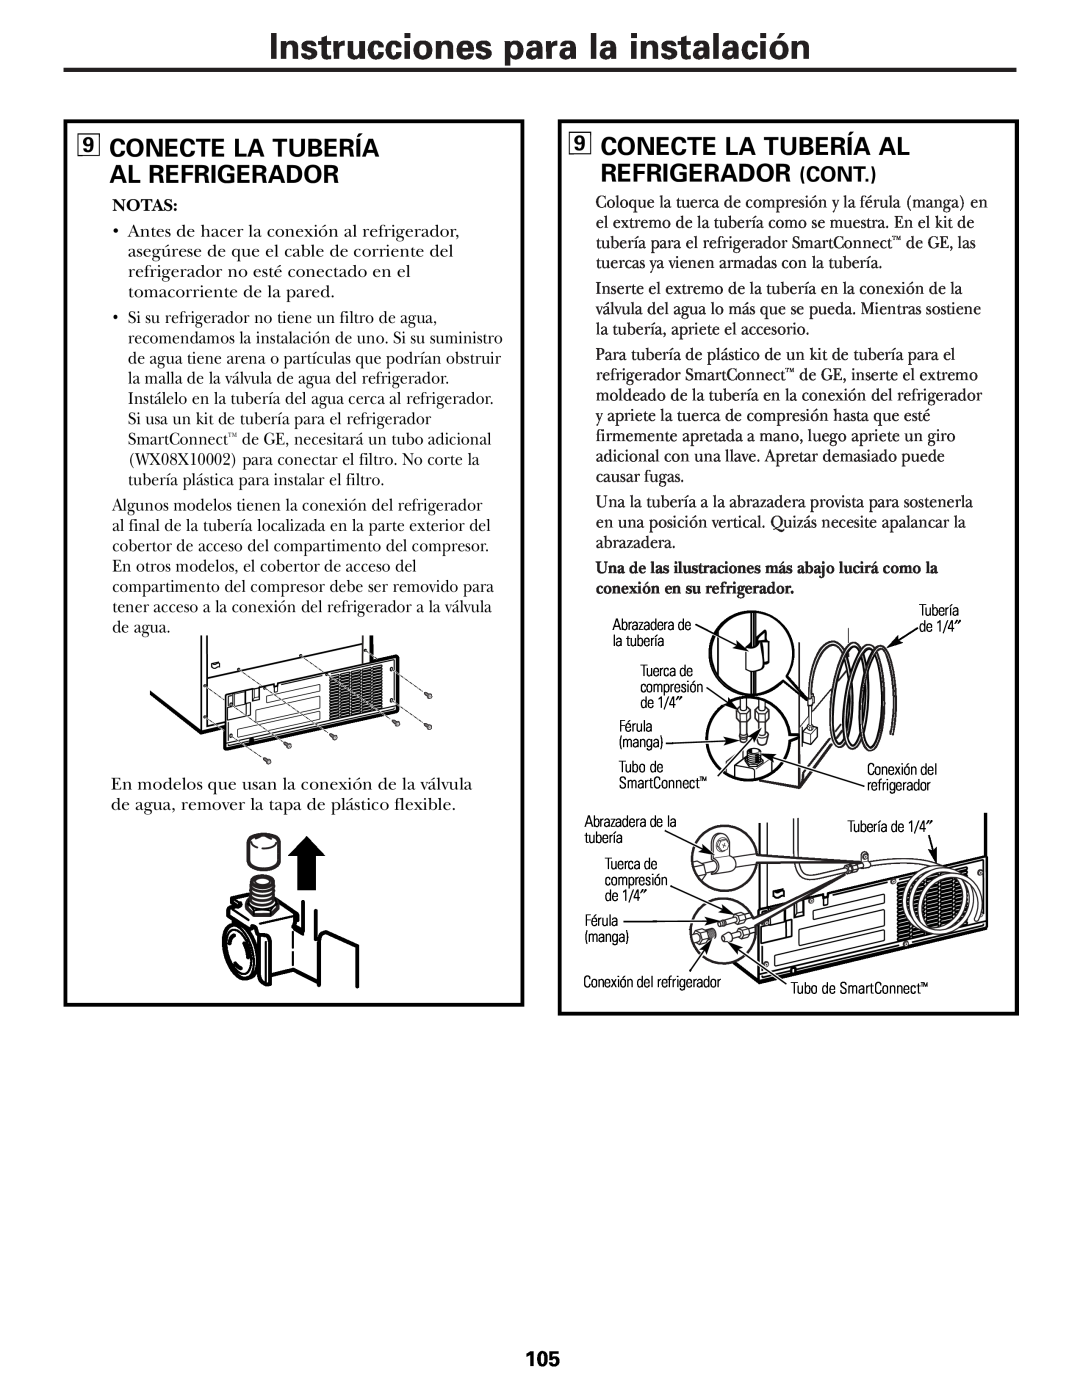 GE installation instructions Conecte La Tubería Al Refrigerador Cont, Instrucciones para la instalación, Notas 